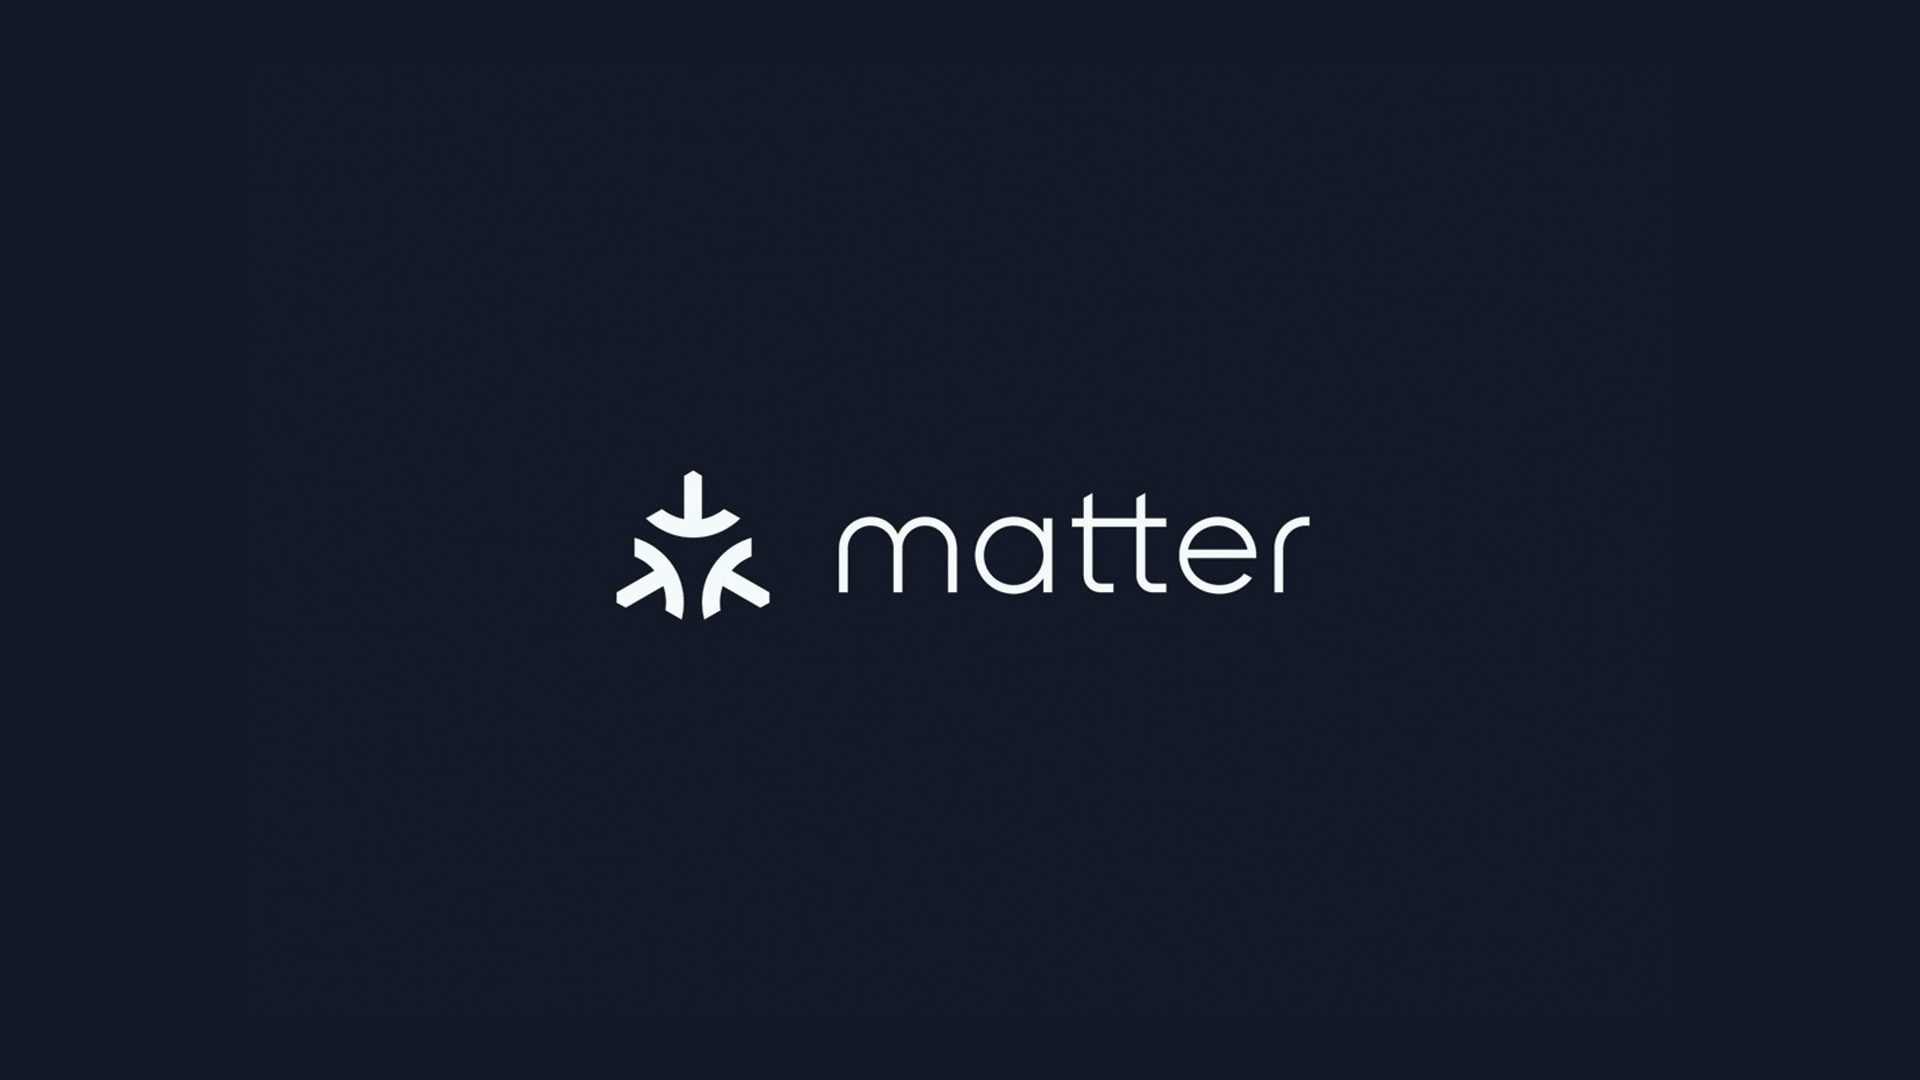 Matter smart home alliance